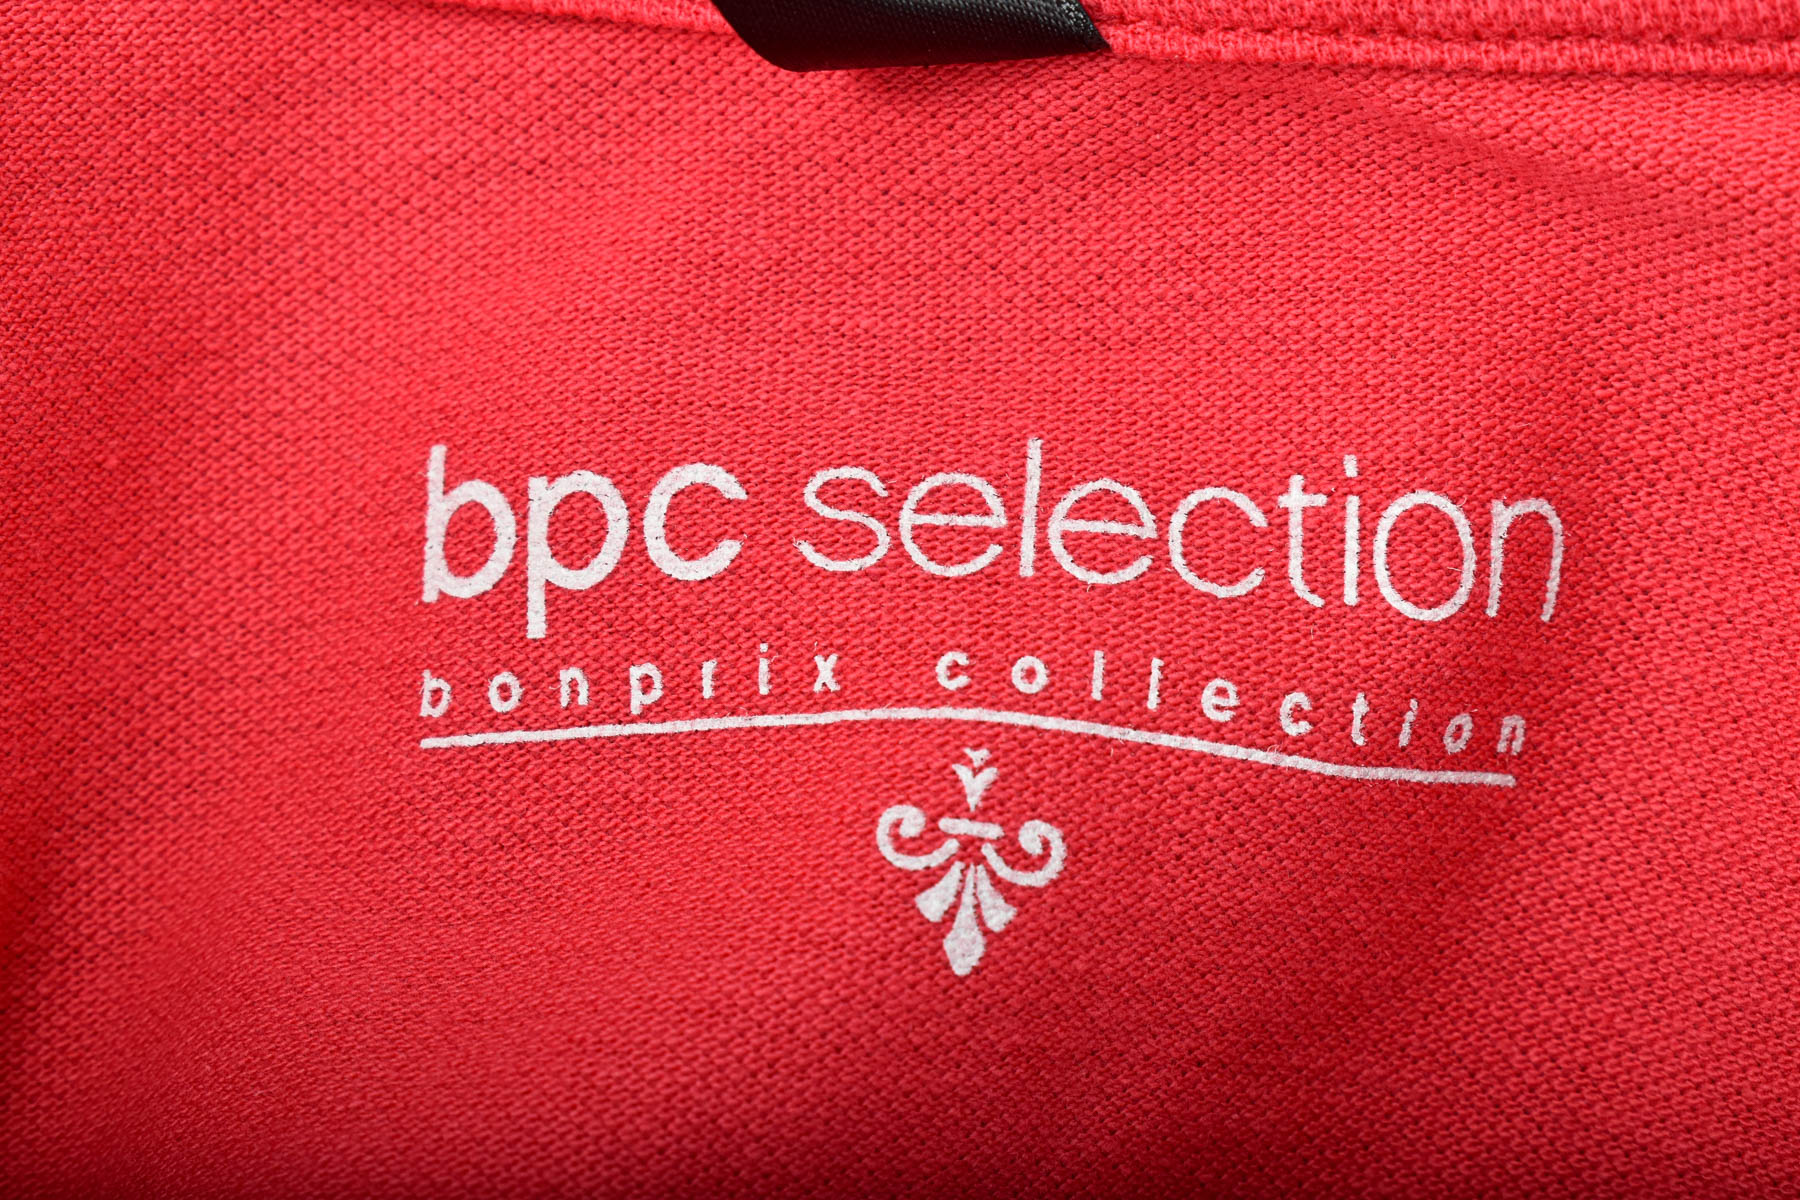 Tricou de damă - Bpc selection bonprix collection - 2